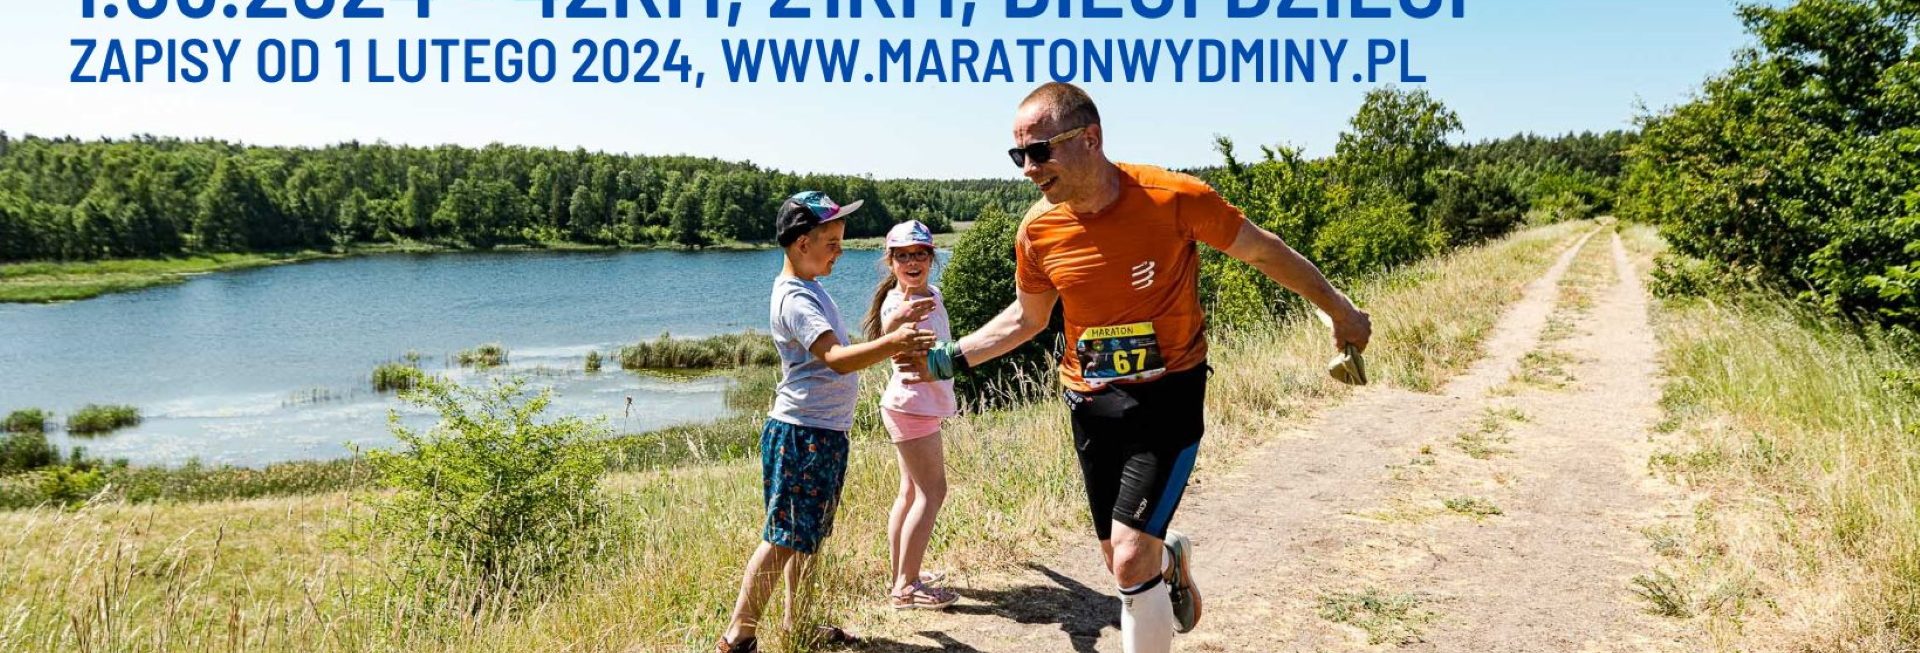 Plakat zapraszający w dniach od 30 maja do 1 czerwca 2024 r. do Wydmin na kolejną edycję Maratonu Wydminy 2024 wokół Jeziora Wydmińskiego.